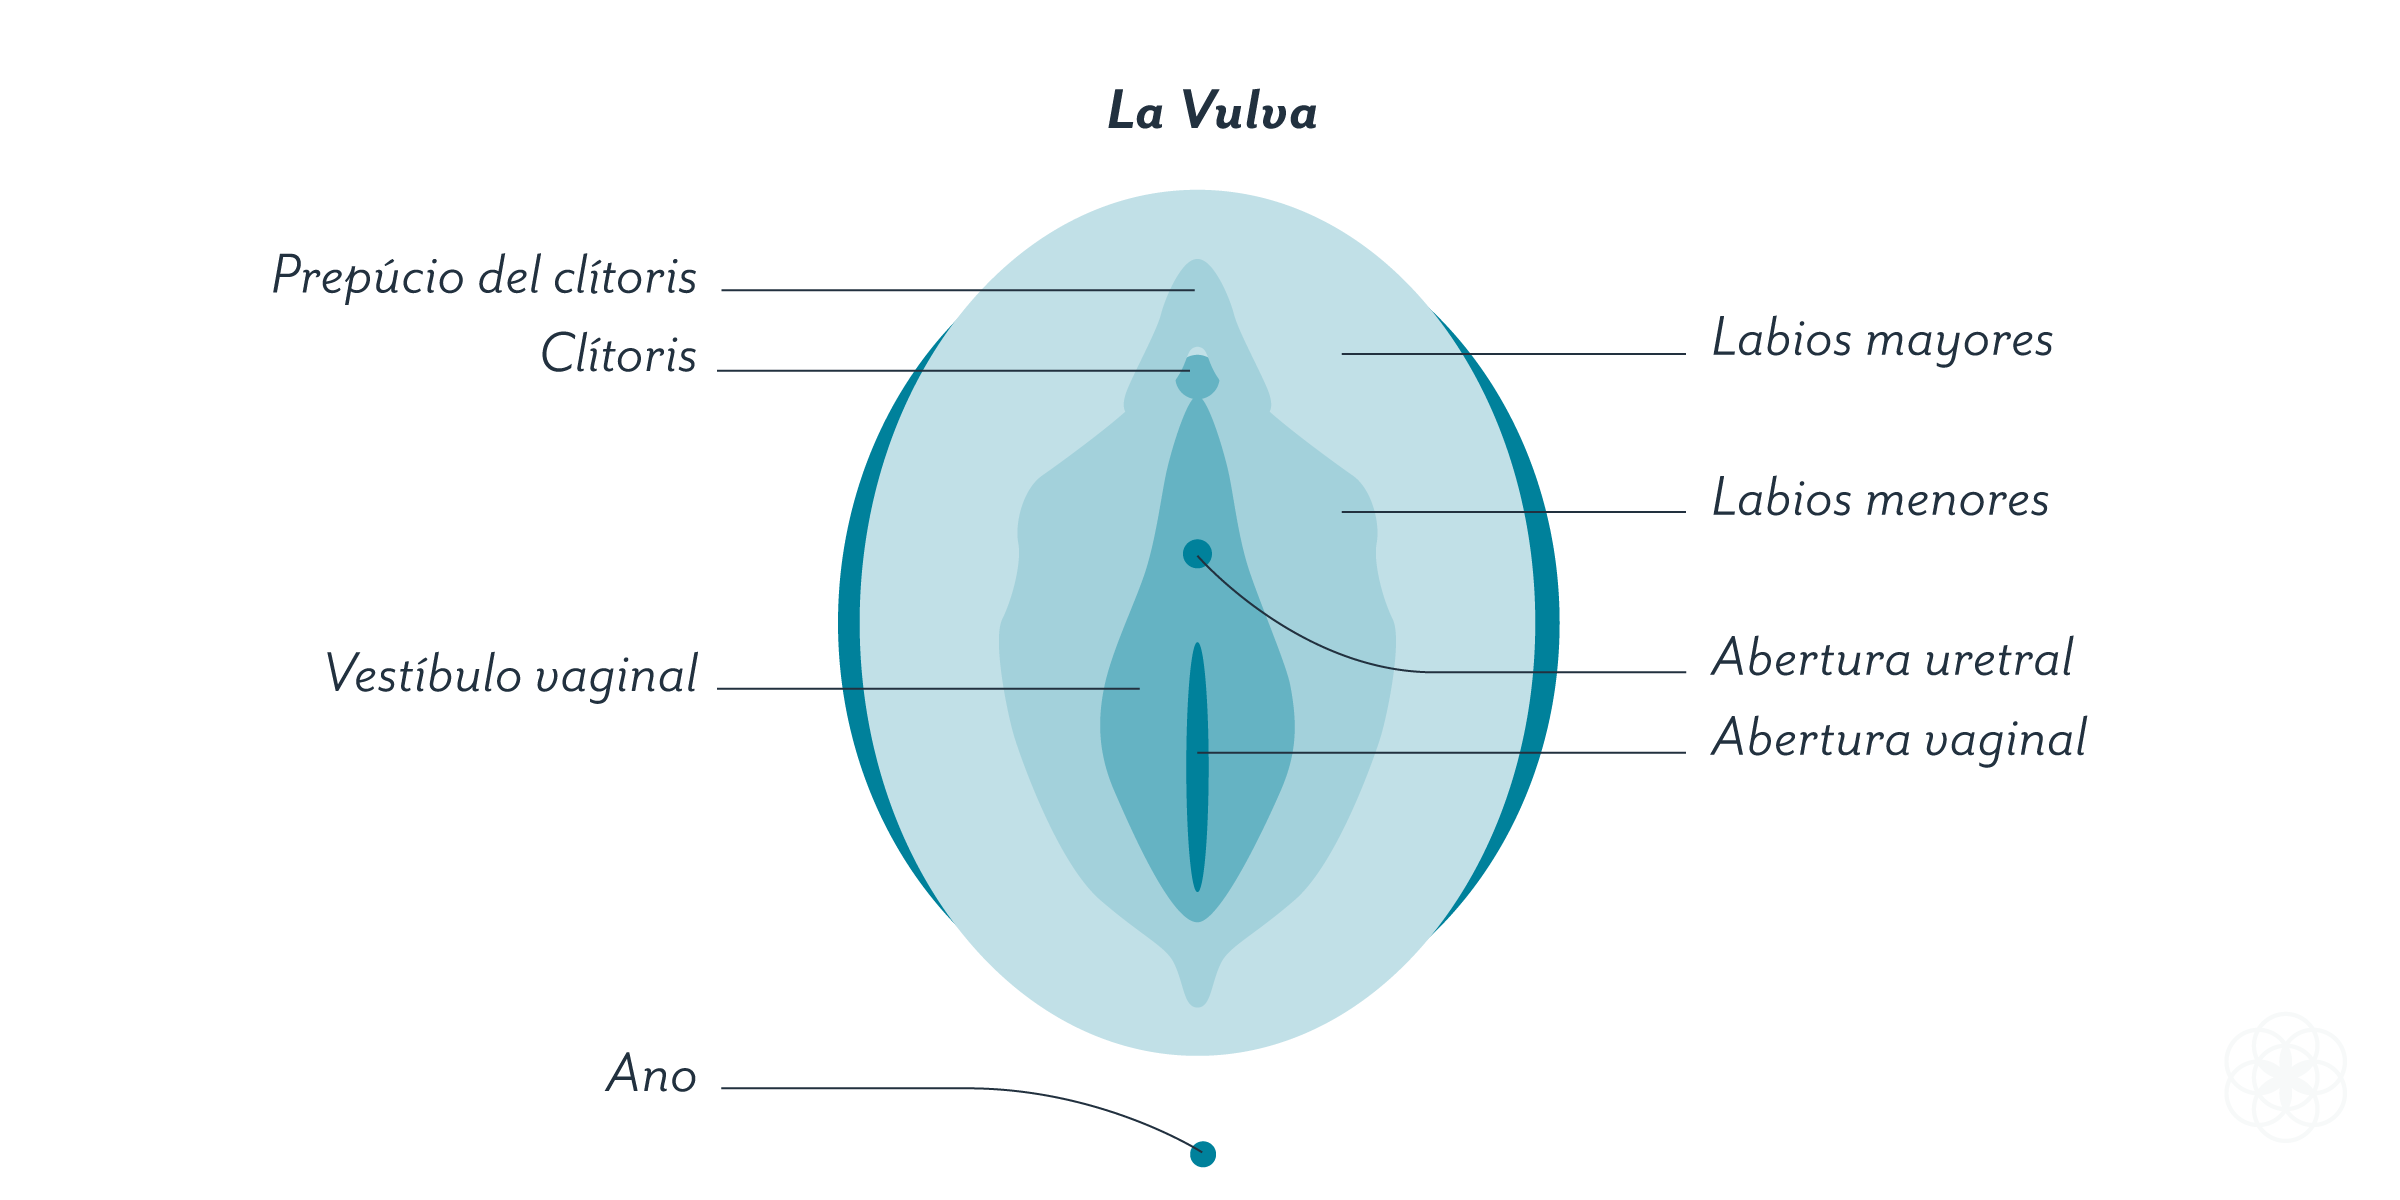 Diagrama de la vulva